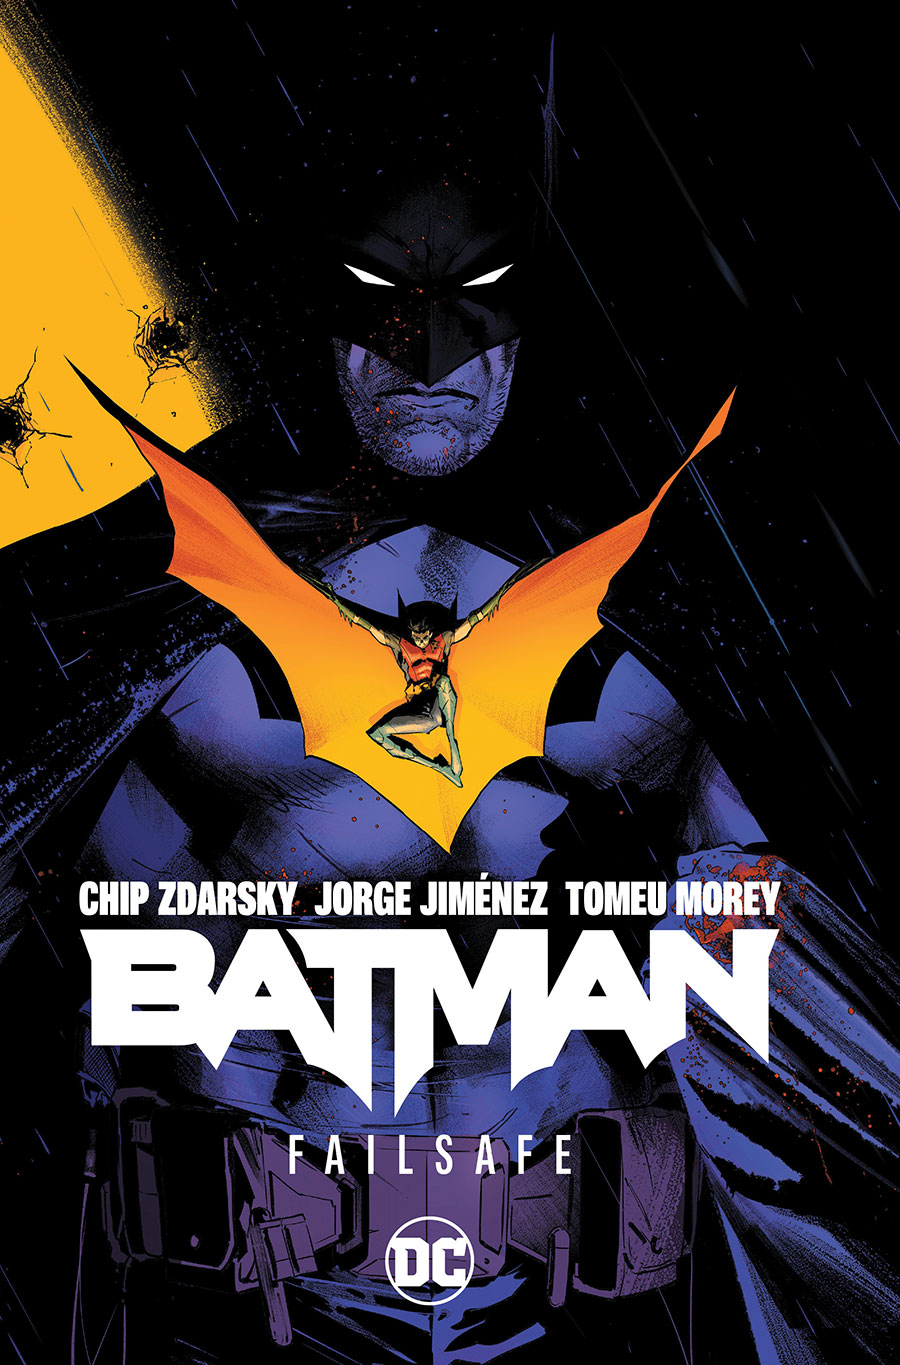 Batman (2022) Vol 1 Failsafe TP